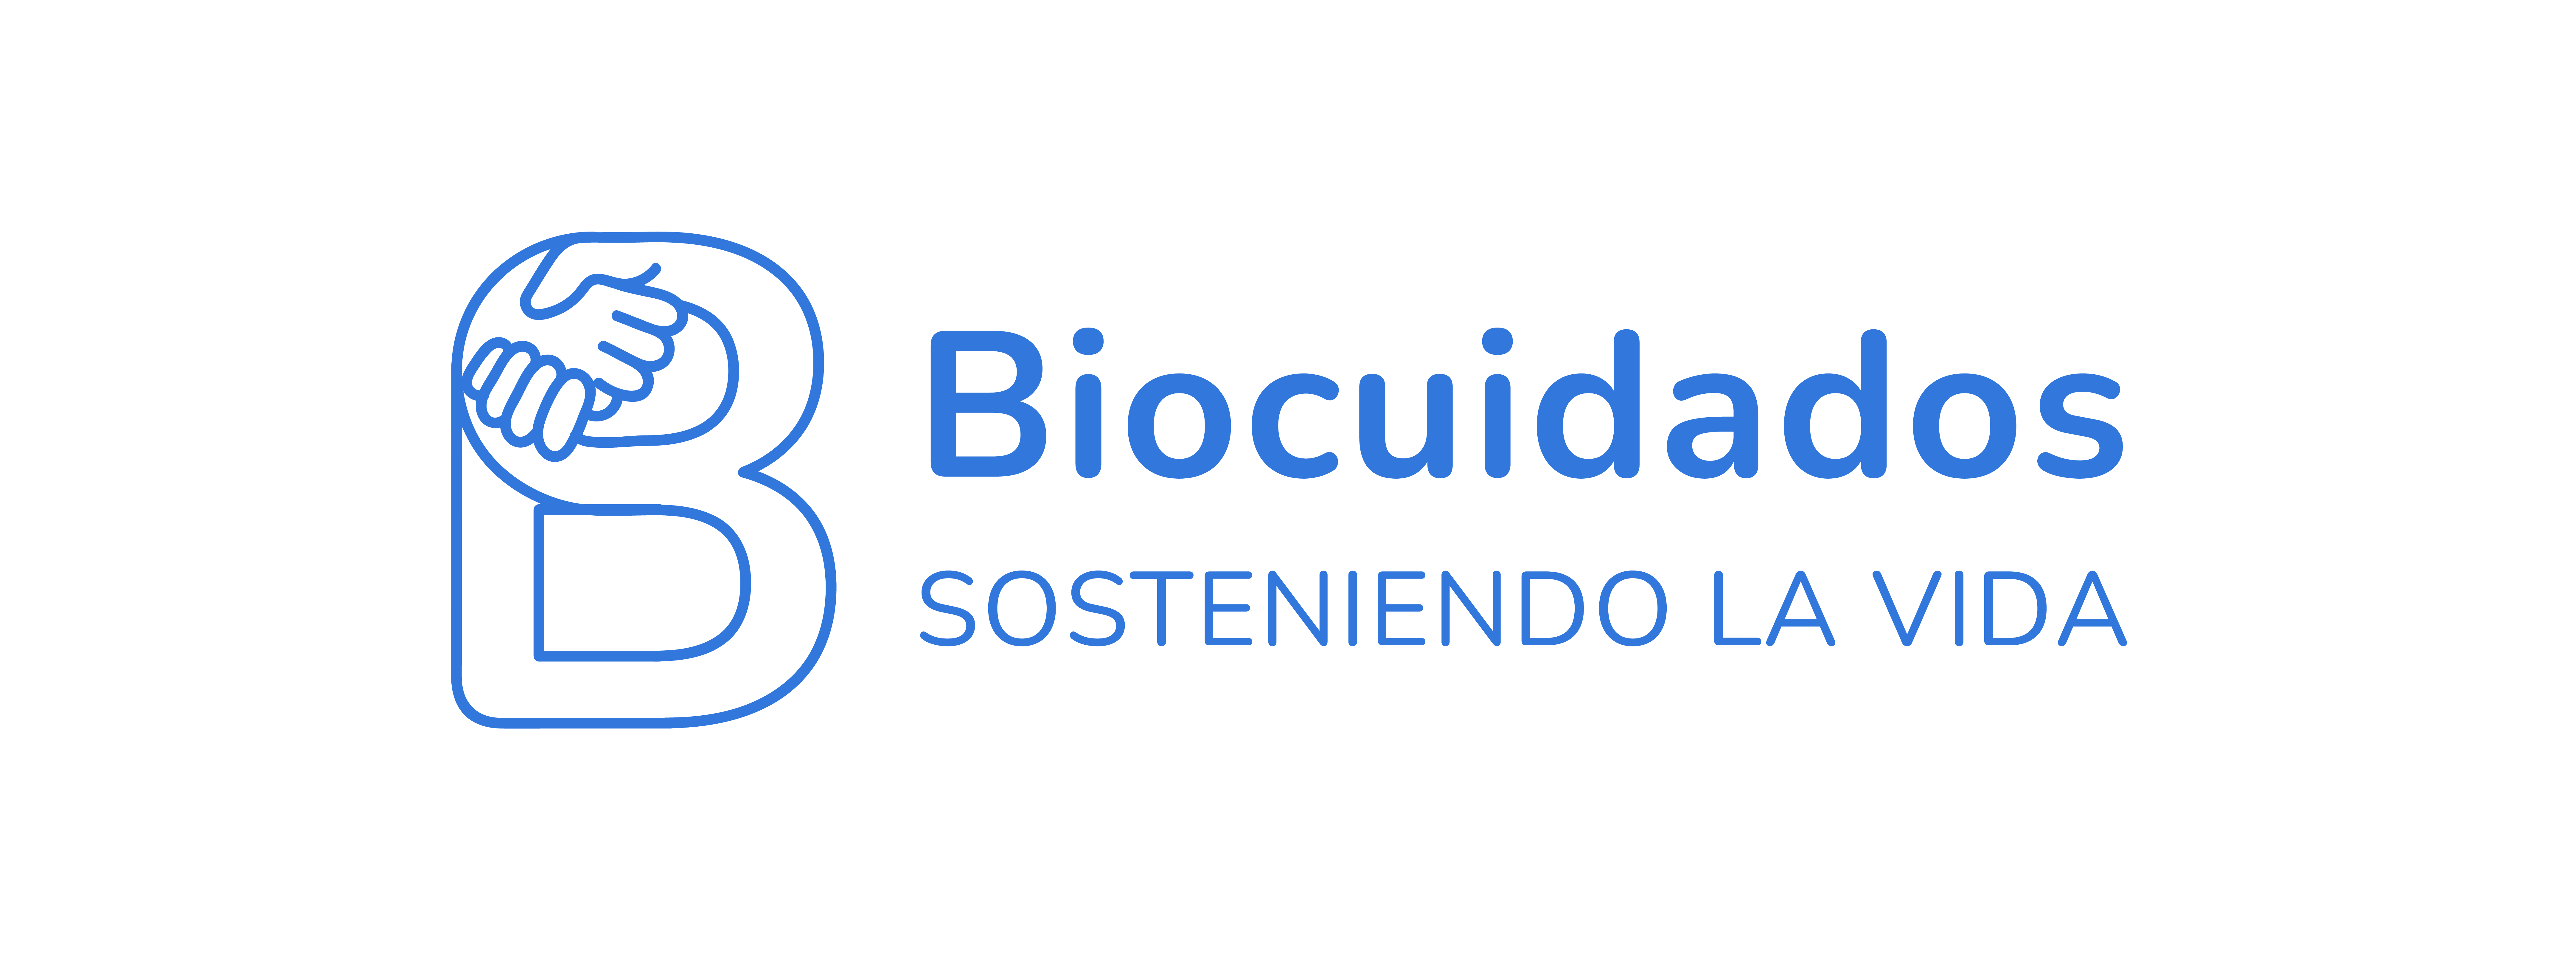 Biocuidados_logo